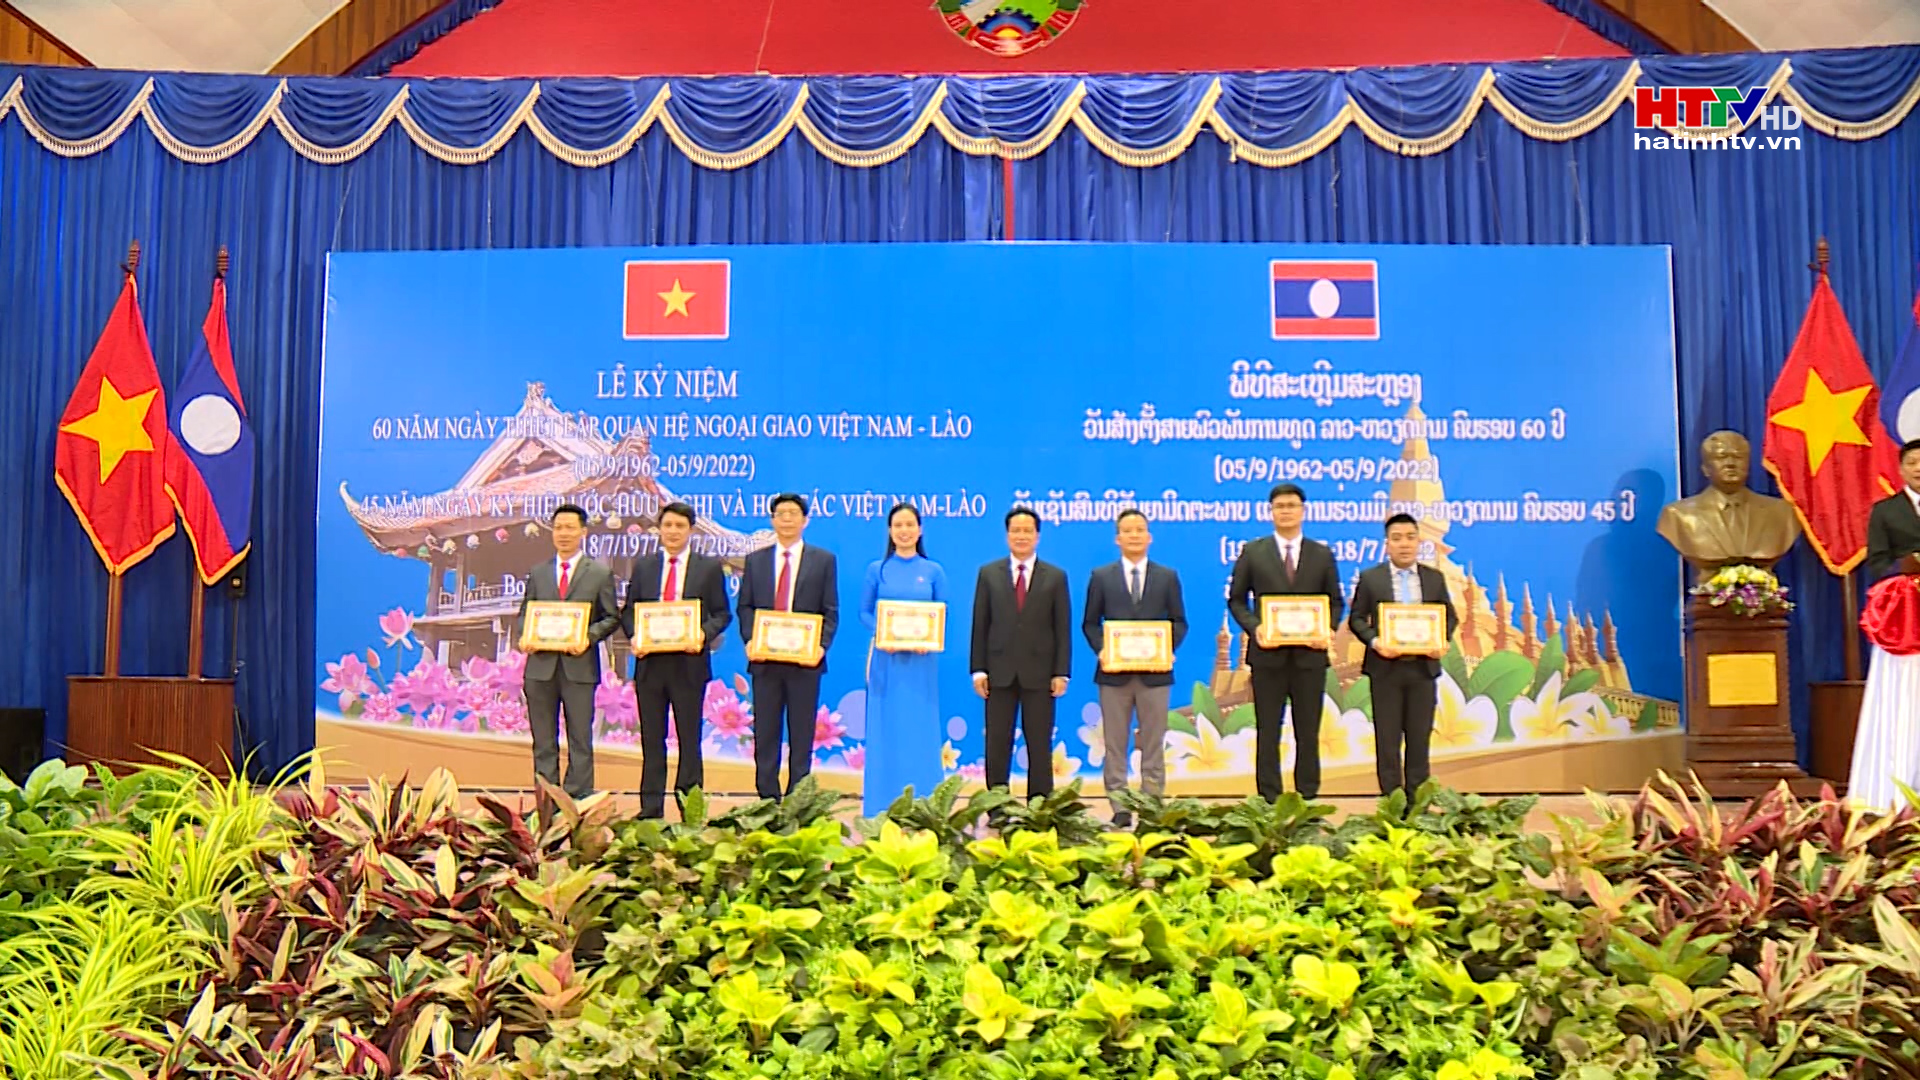 Bolikhămxay long trọng Lễ Kỷ niệm 60 năm ngày thiết lập quan hệ ngoại giao Việt - Lào